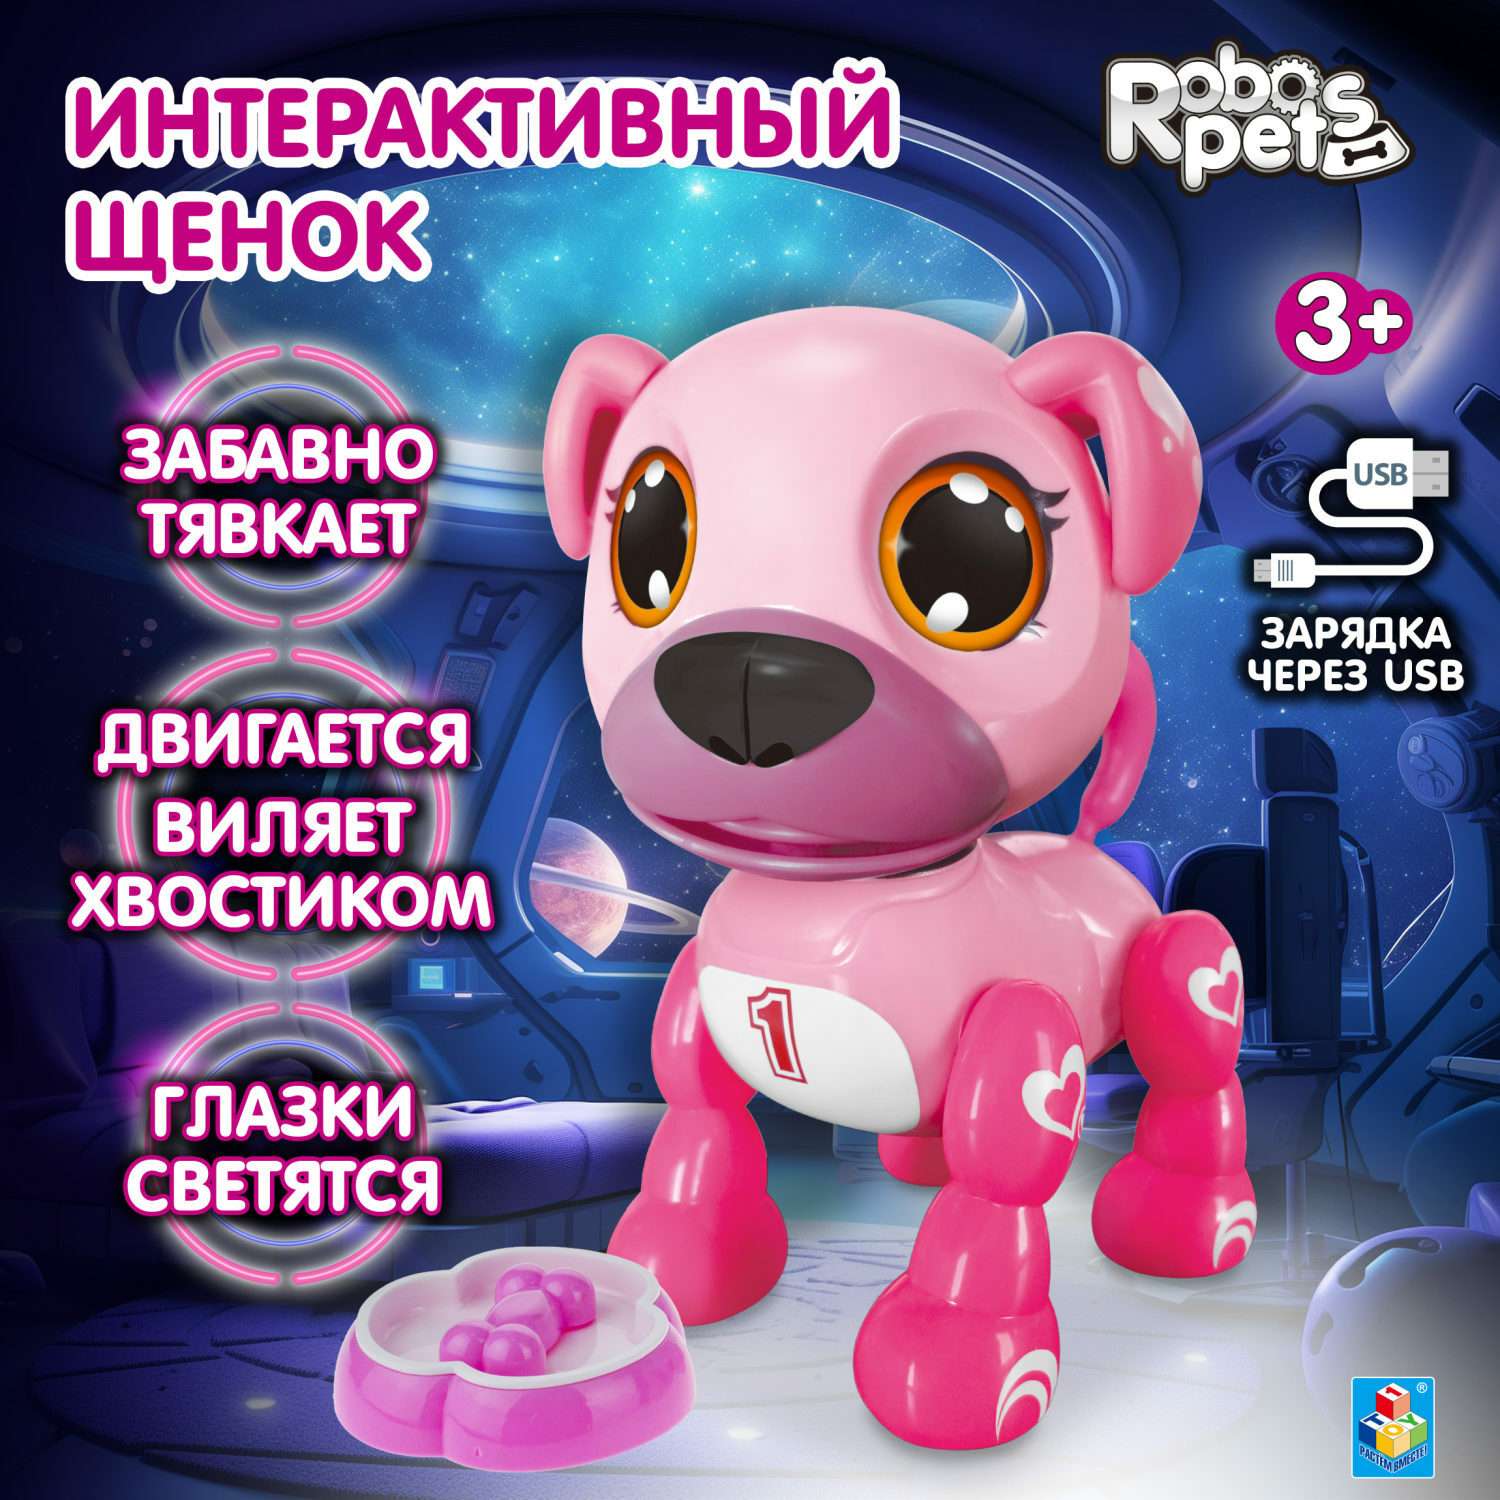 Интерактивная игрушка Robo Life Робо-щенок розовый со звуковыми световыми и эффектами движения - фото 2